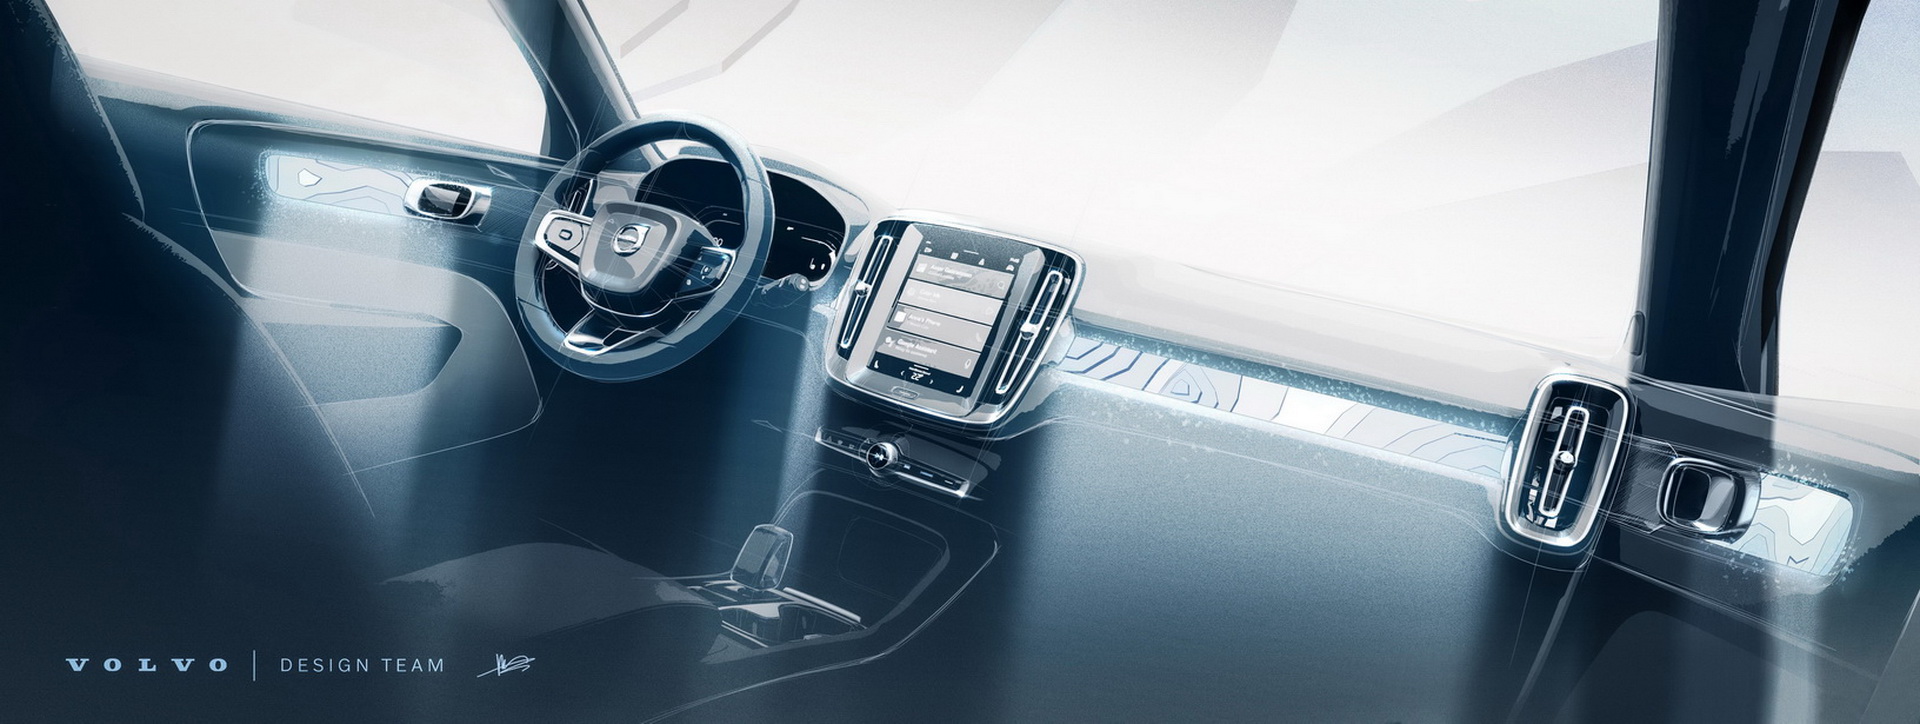 Volvo C40 Recharge во многом олицетворяет будущее Volvo Cars